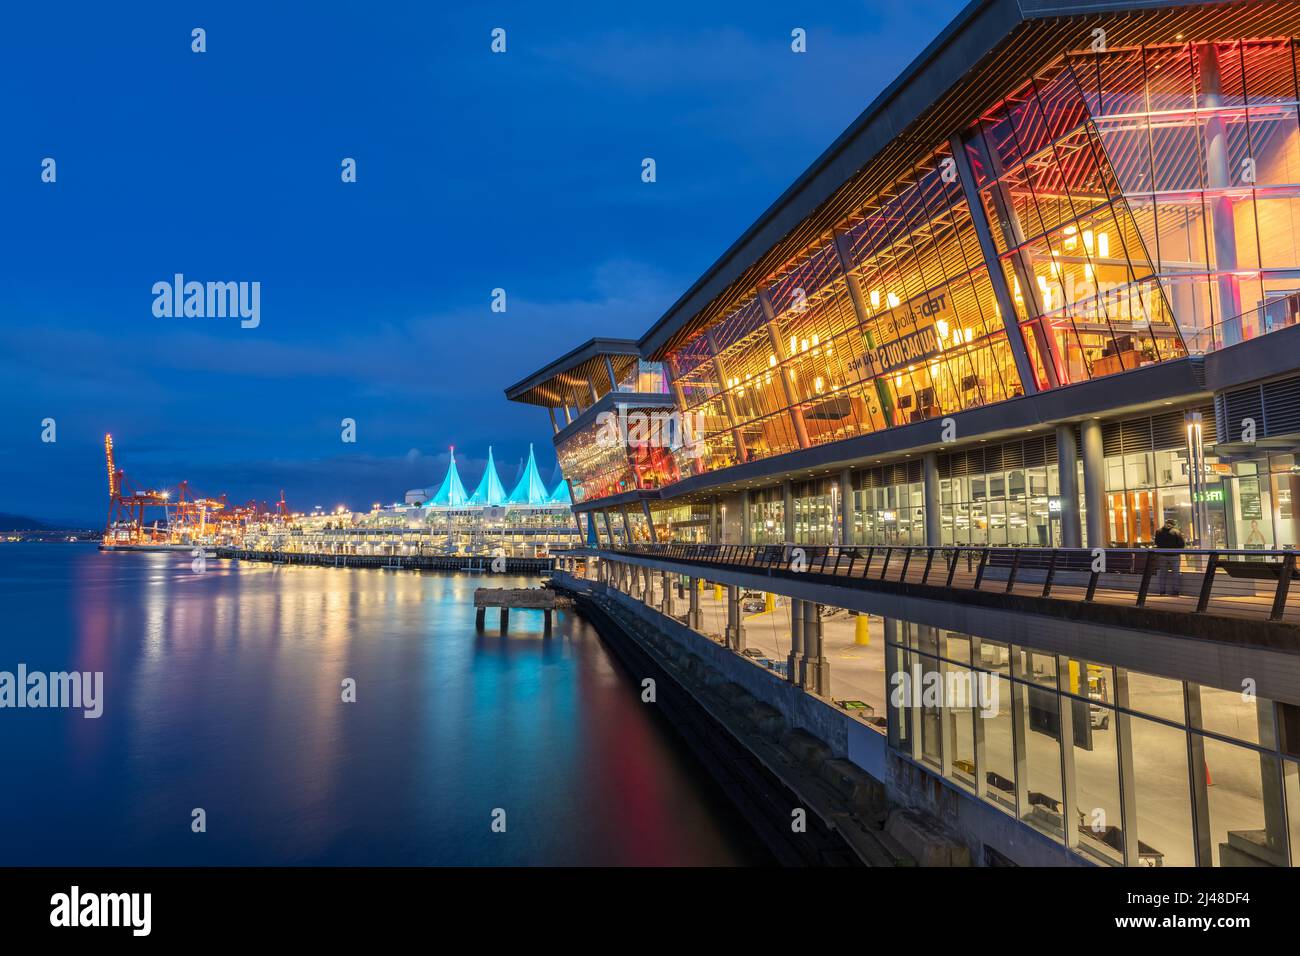 Scène nocturne de bâtiments modernes dans le centre-ville de Vancouver. Exposition longue de Canada place. Nuit colorée en ville avec parc au bord de l'eau. Photo de rue, sélectiv Banque D'Images